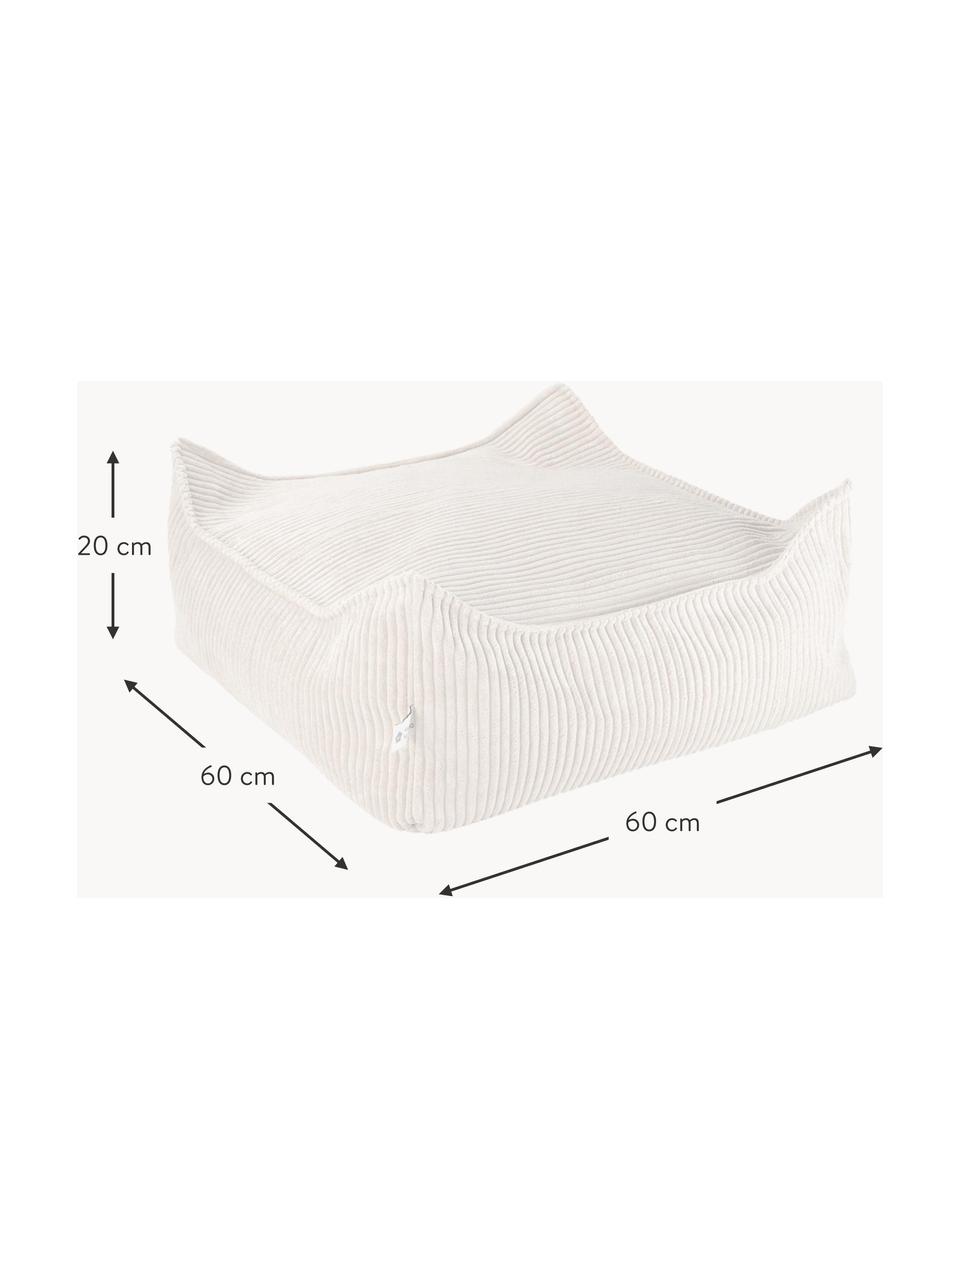 Kinder-Bodenkissen Sugar aus Cord, Bezug: Cord (100 % Polyester) au, Cord Weiß, B 60 x T 60 cm